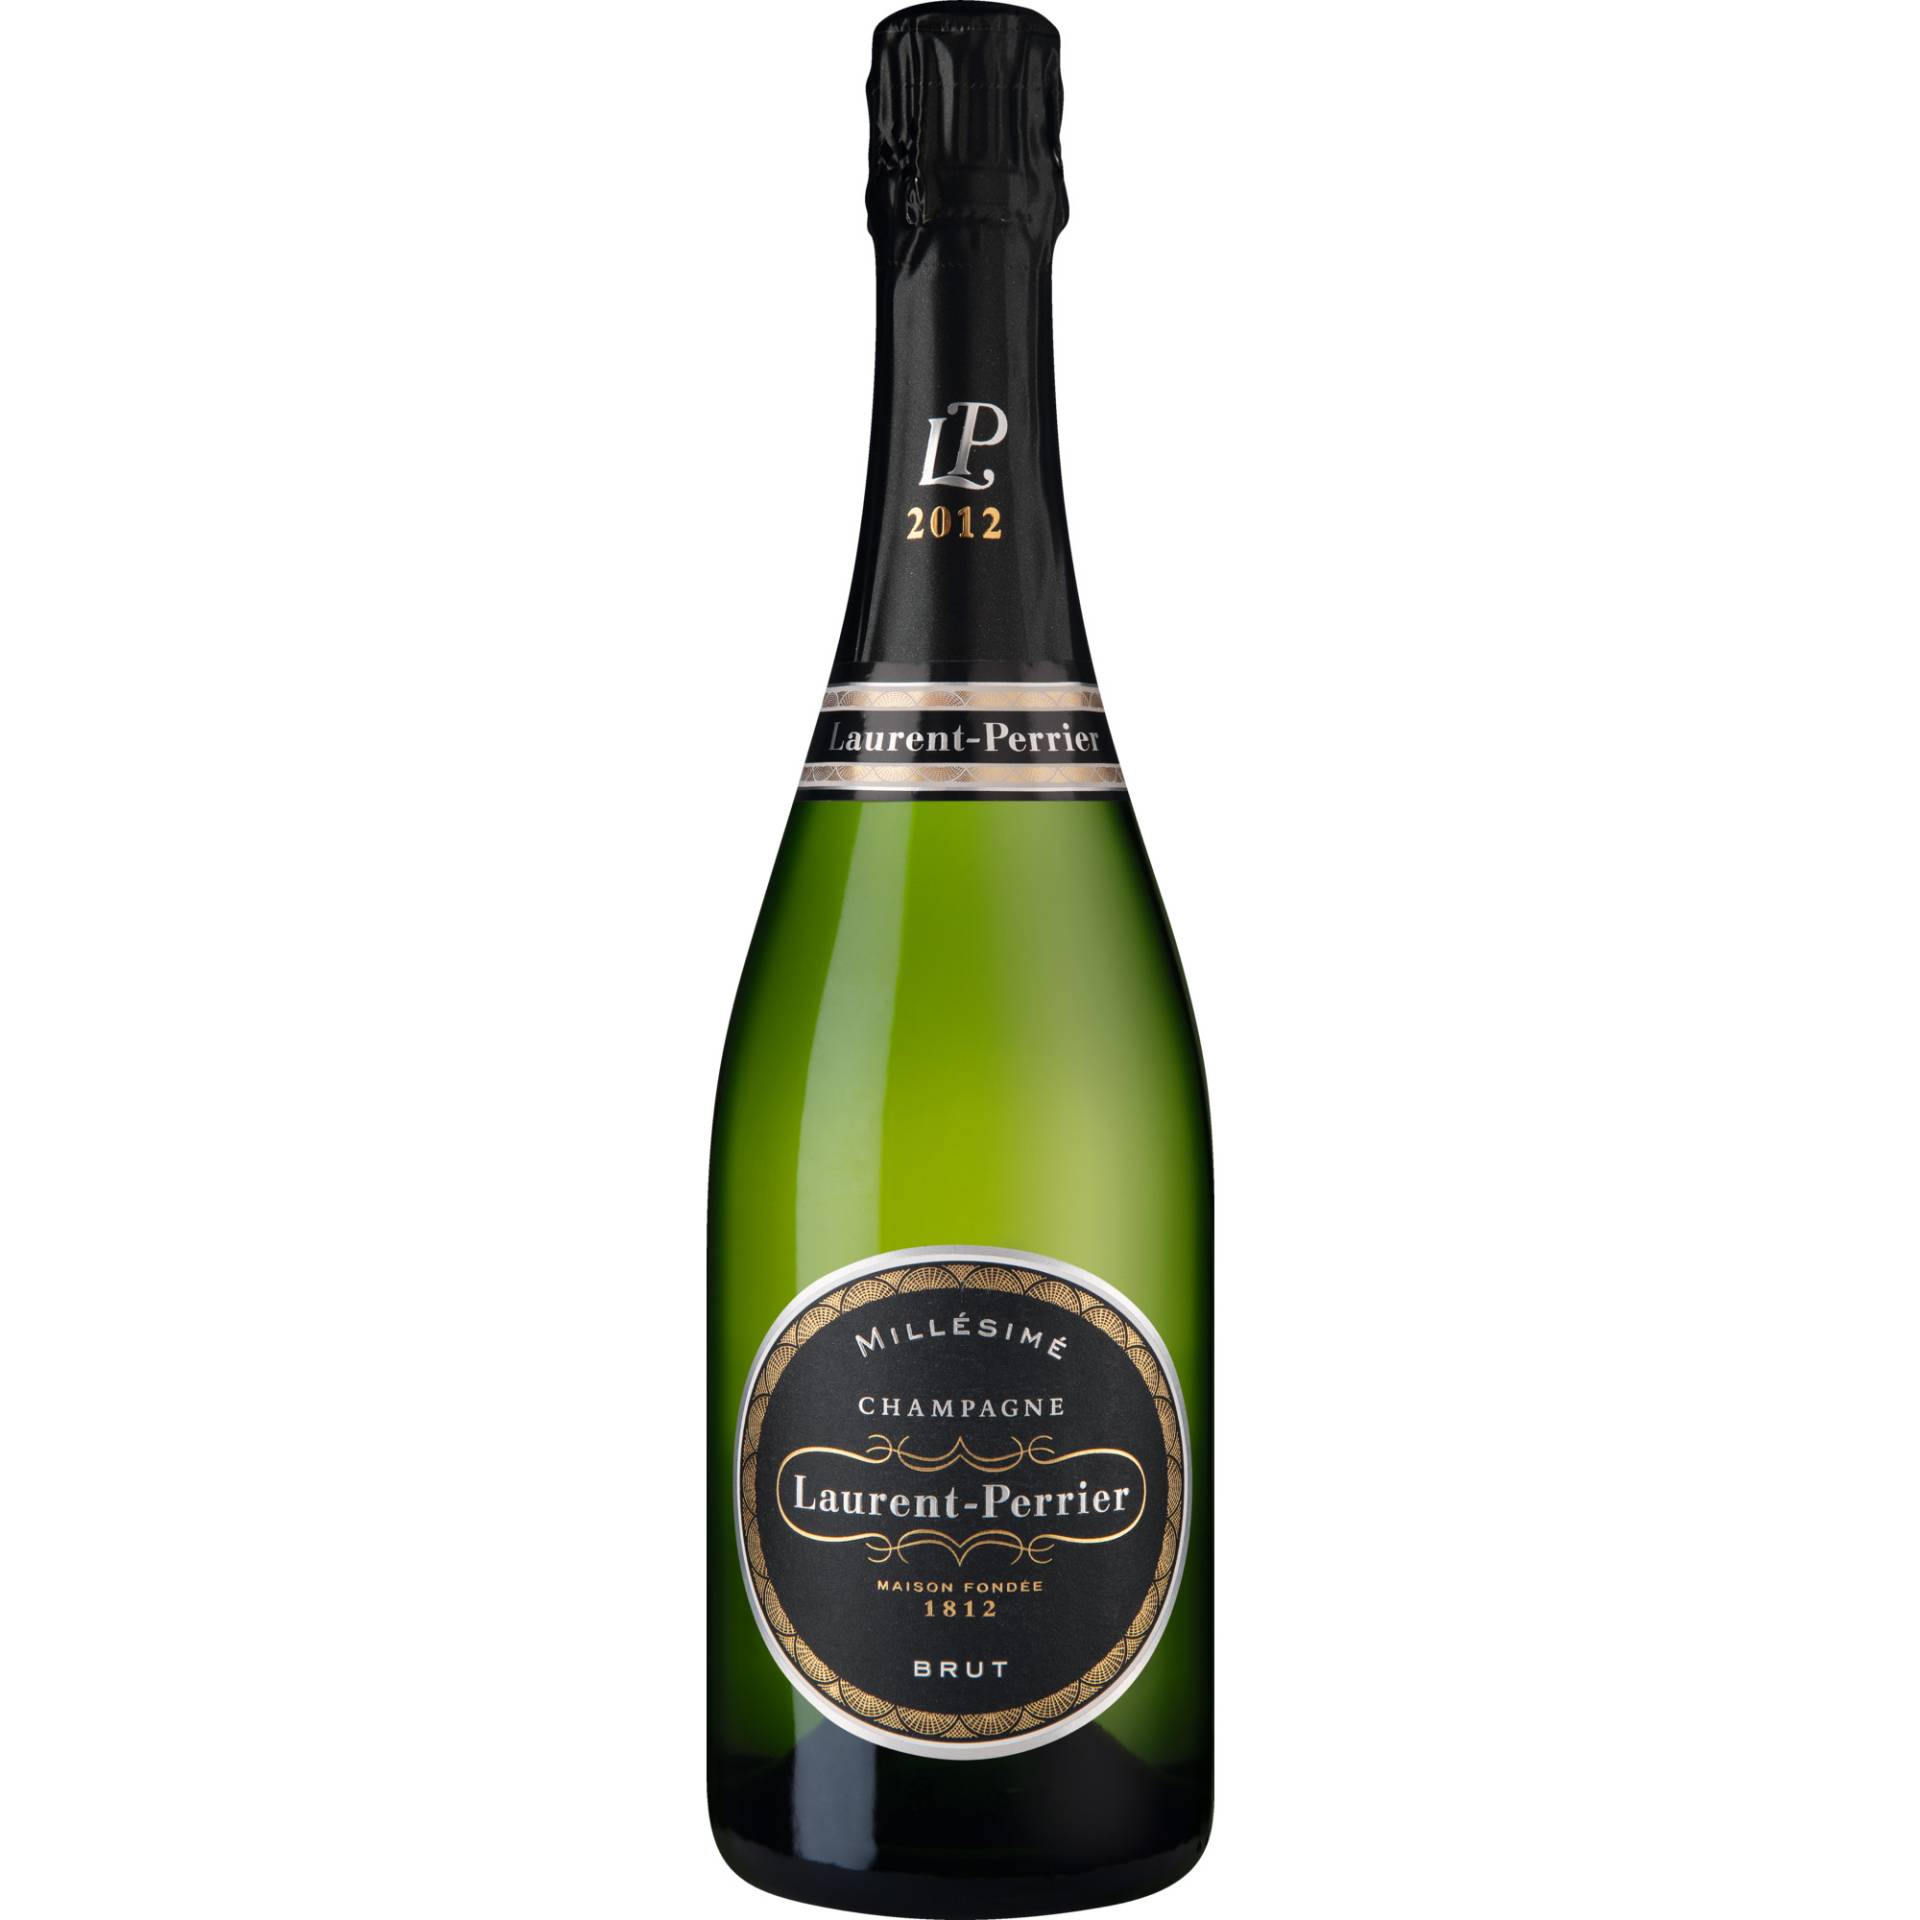 Champagne Laurent-Perrier, Brut, Champagne AC, Geschenketui, Champagne, 2012, Schaumwein von Champagne Laurent-Perrier, Tours-sur-Marne, France